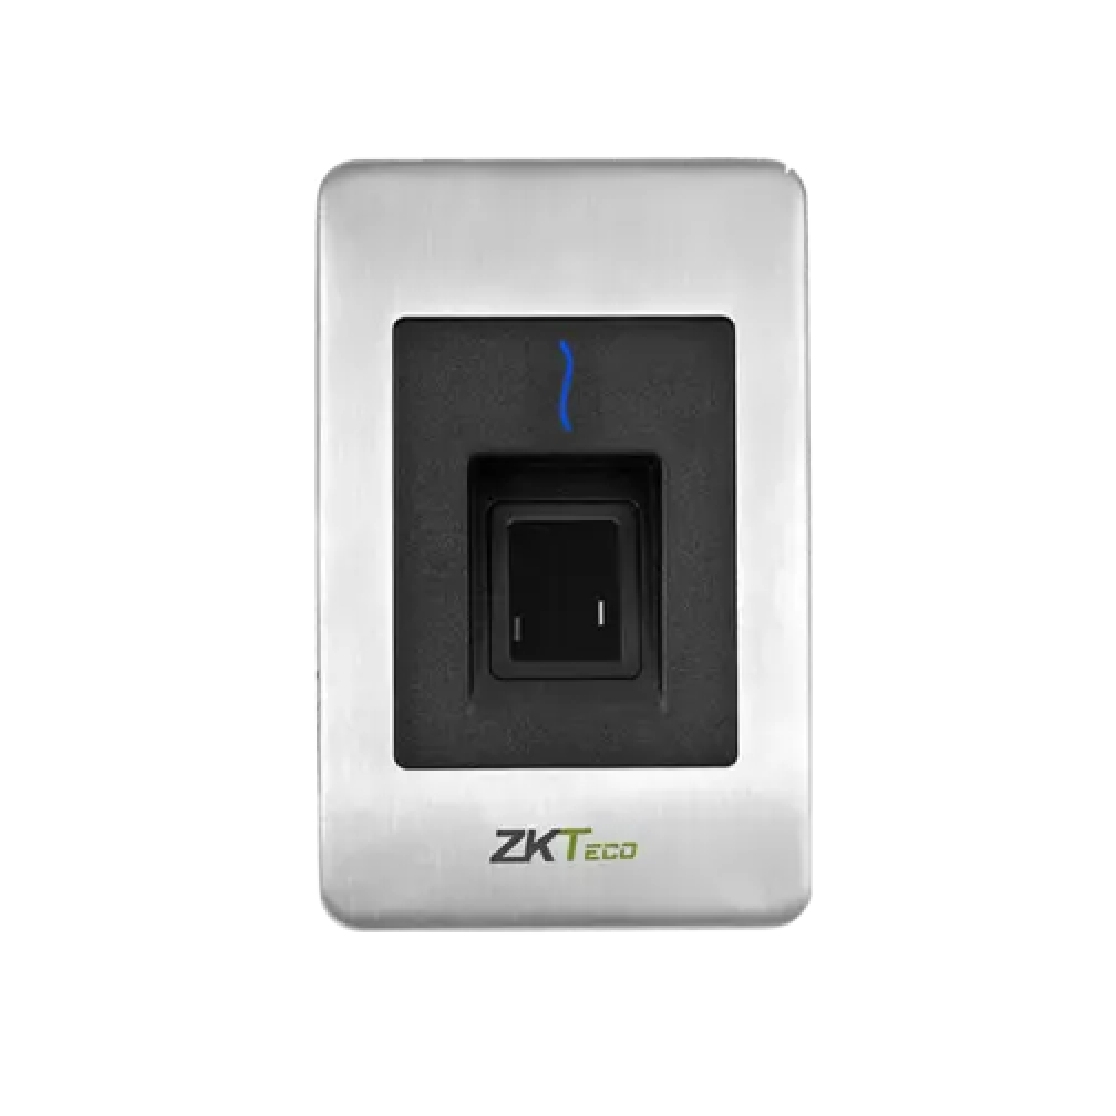 Zkteco FR1500 Flush-Mounted RS-485 Fingerprint Reader